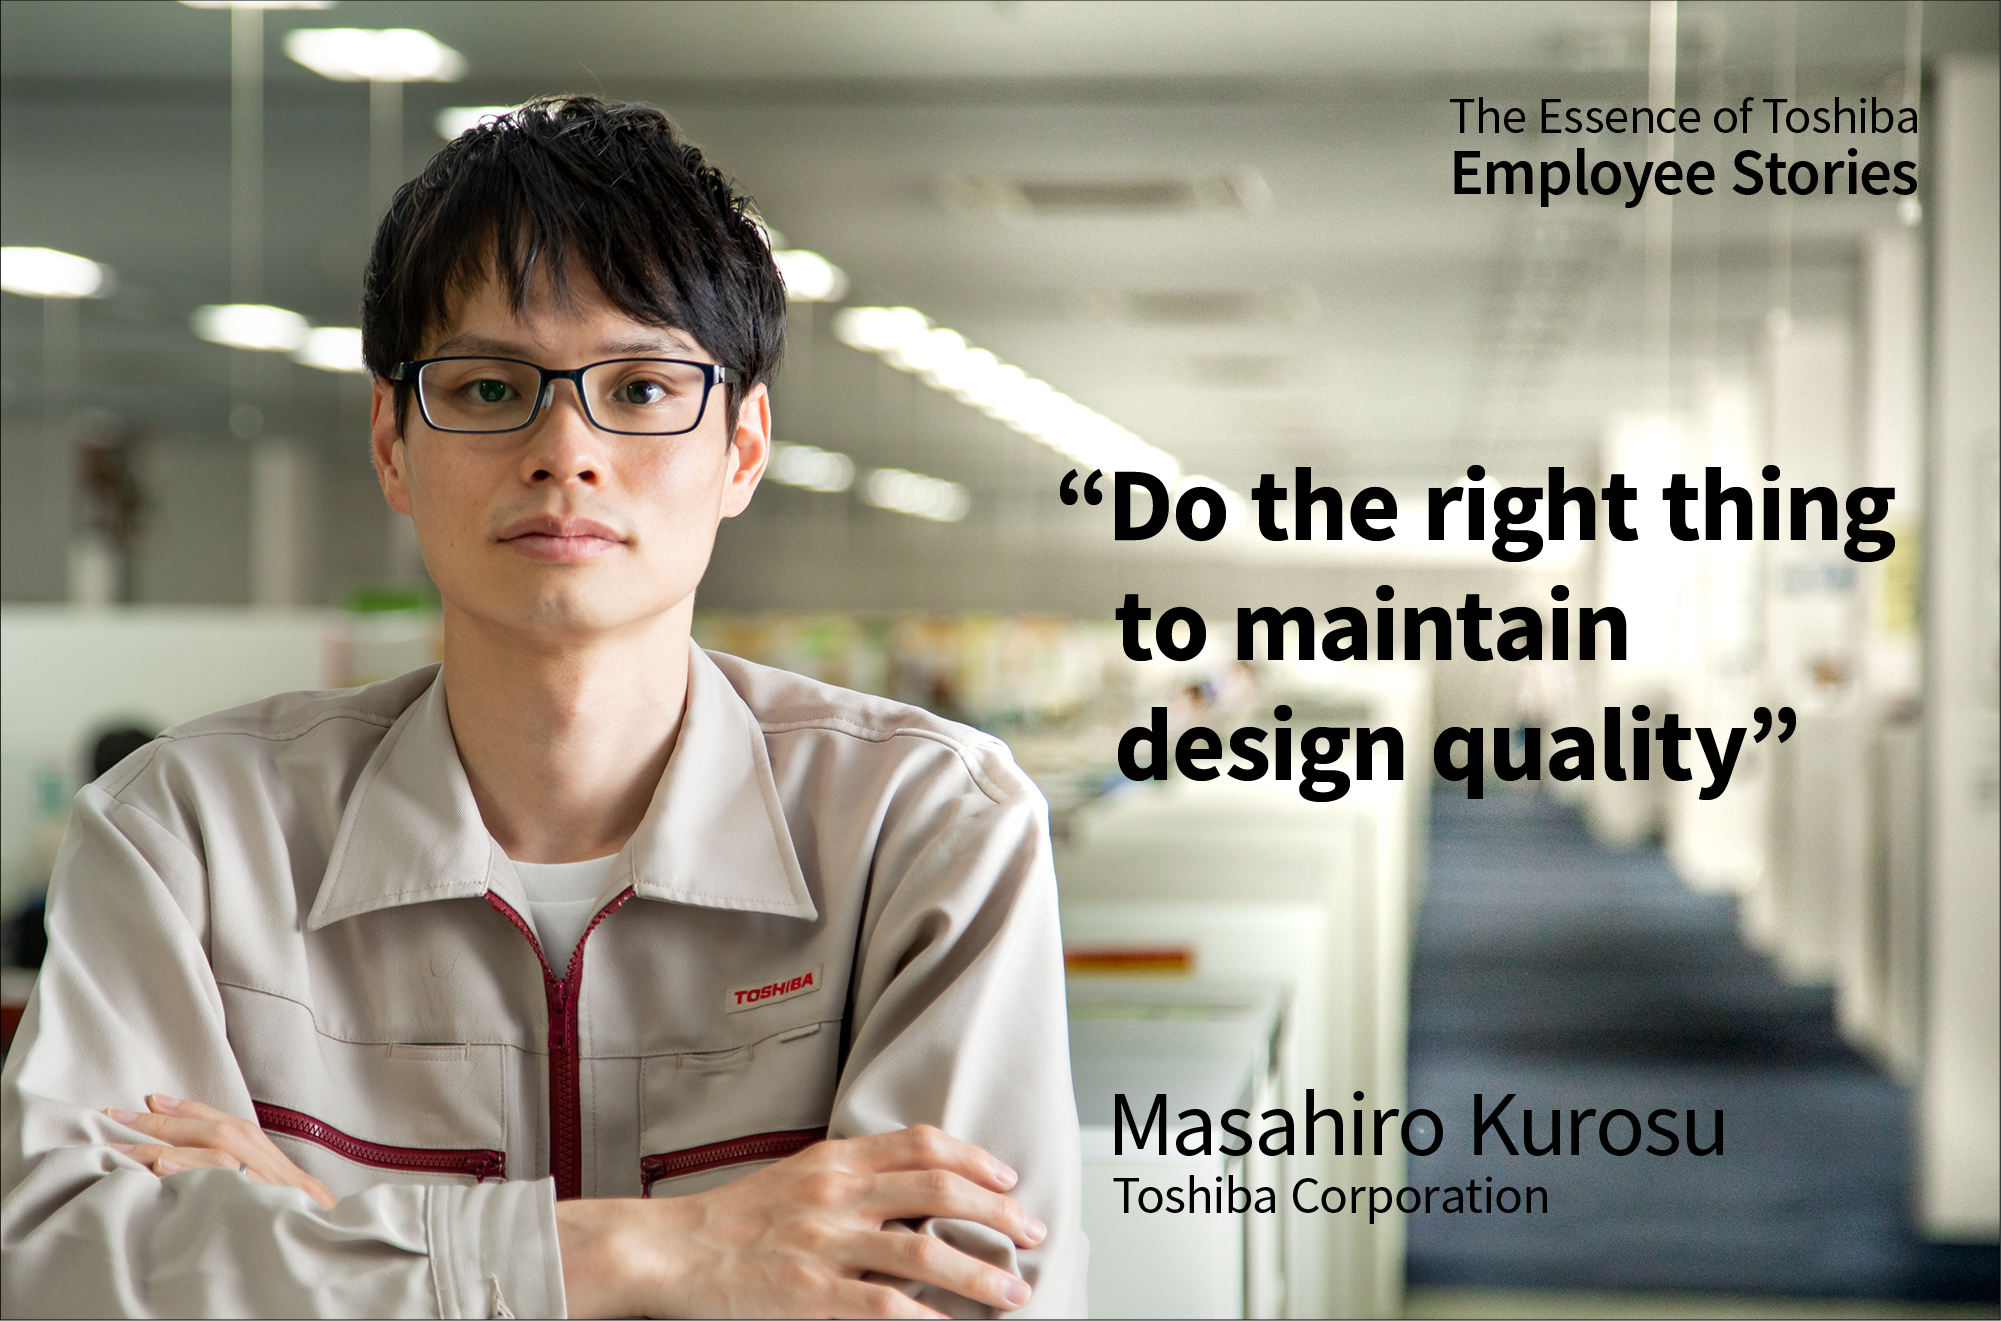 Toshiba Corporation: Masahiro Kurosu